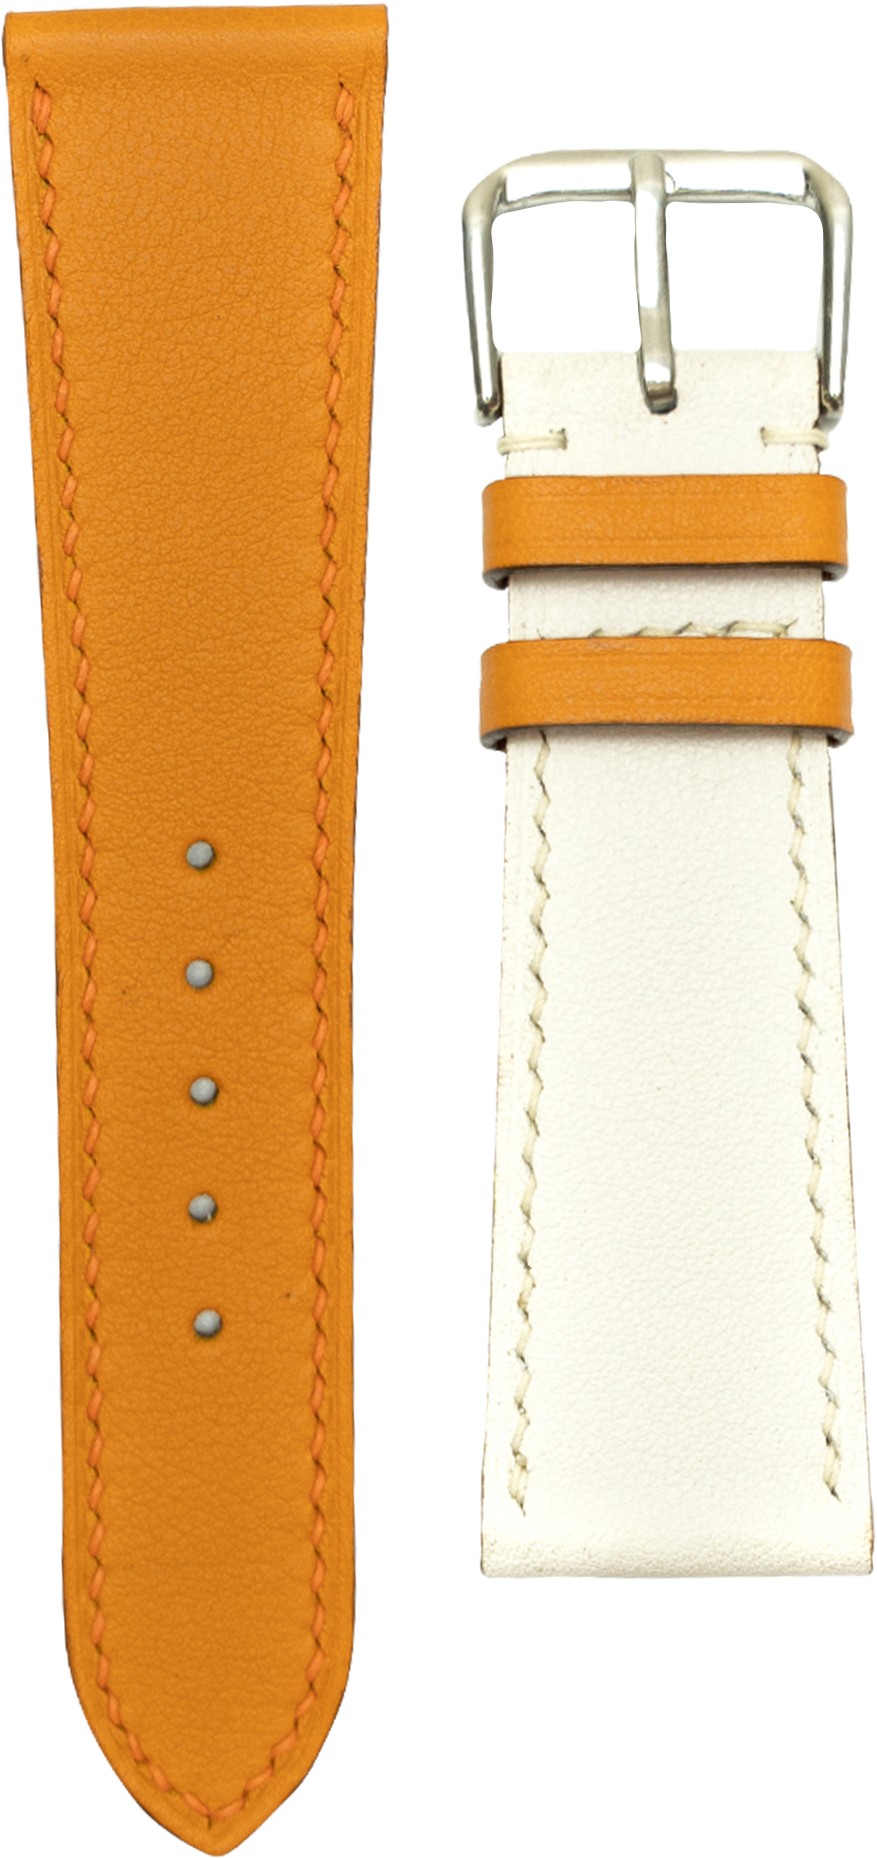 Swift Leather Watch Strap - Orange/White